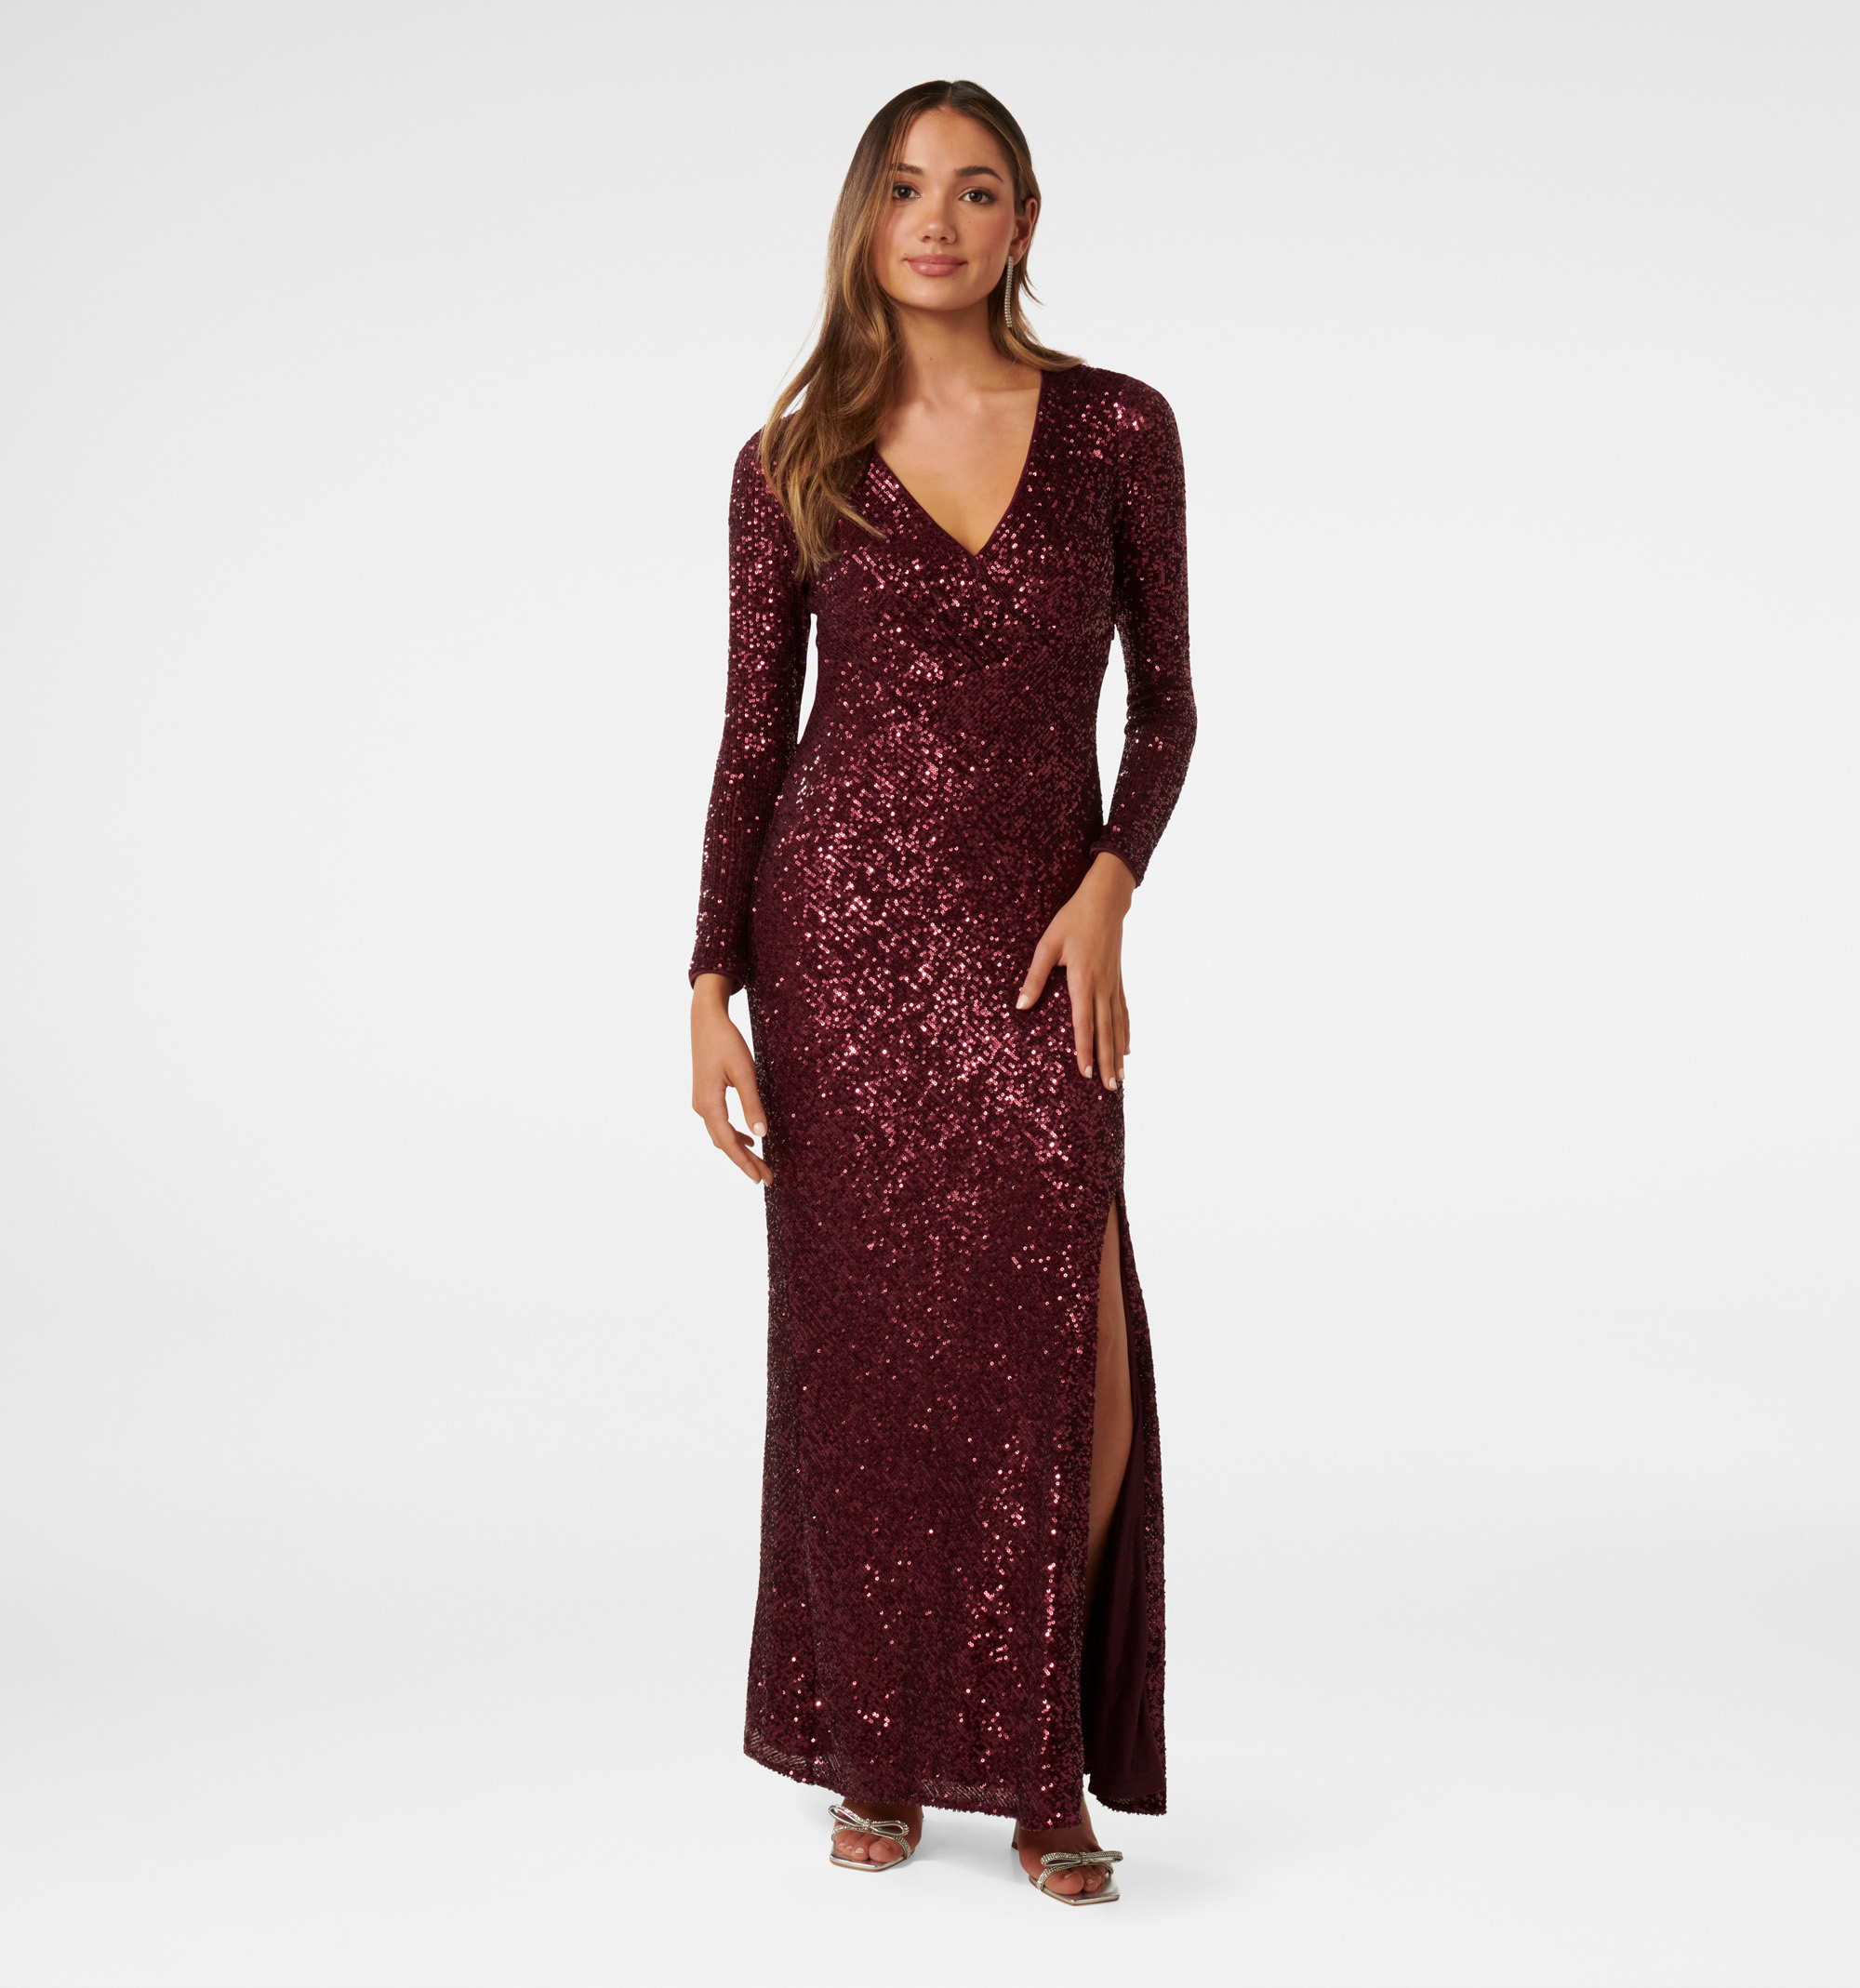 Purple Sequin Prom Dress with Slit One Shoulder Formal Dresses FD2973 –  Viniodress